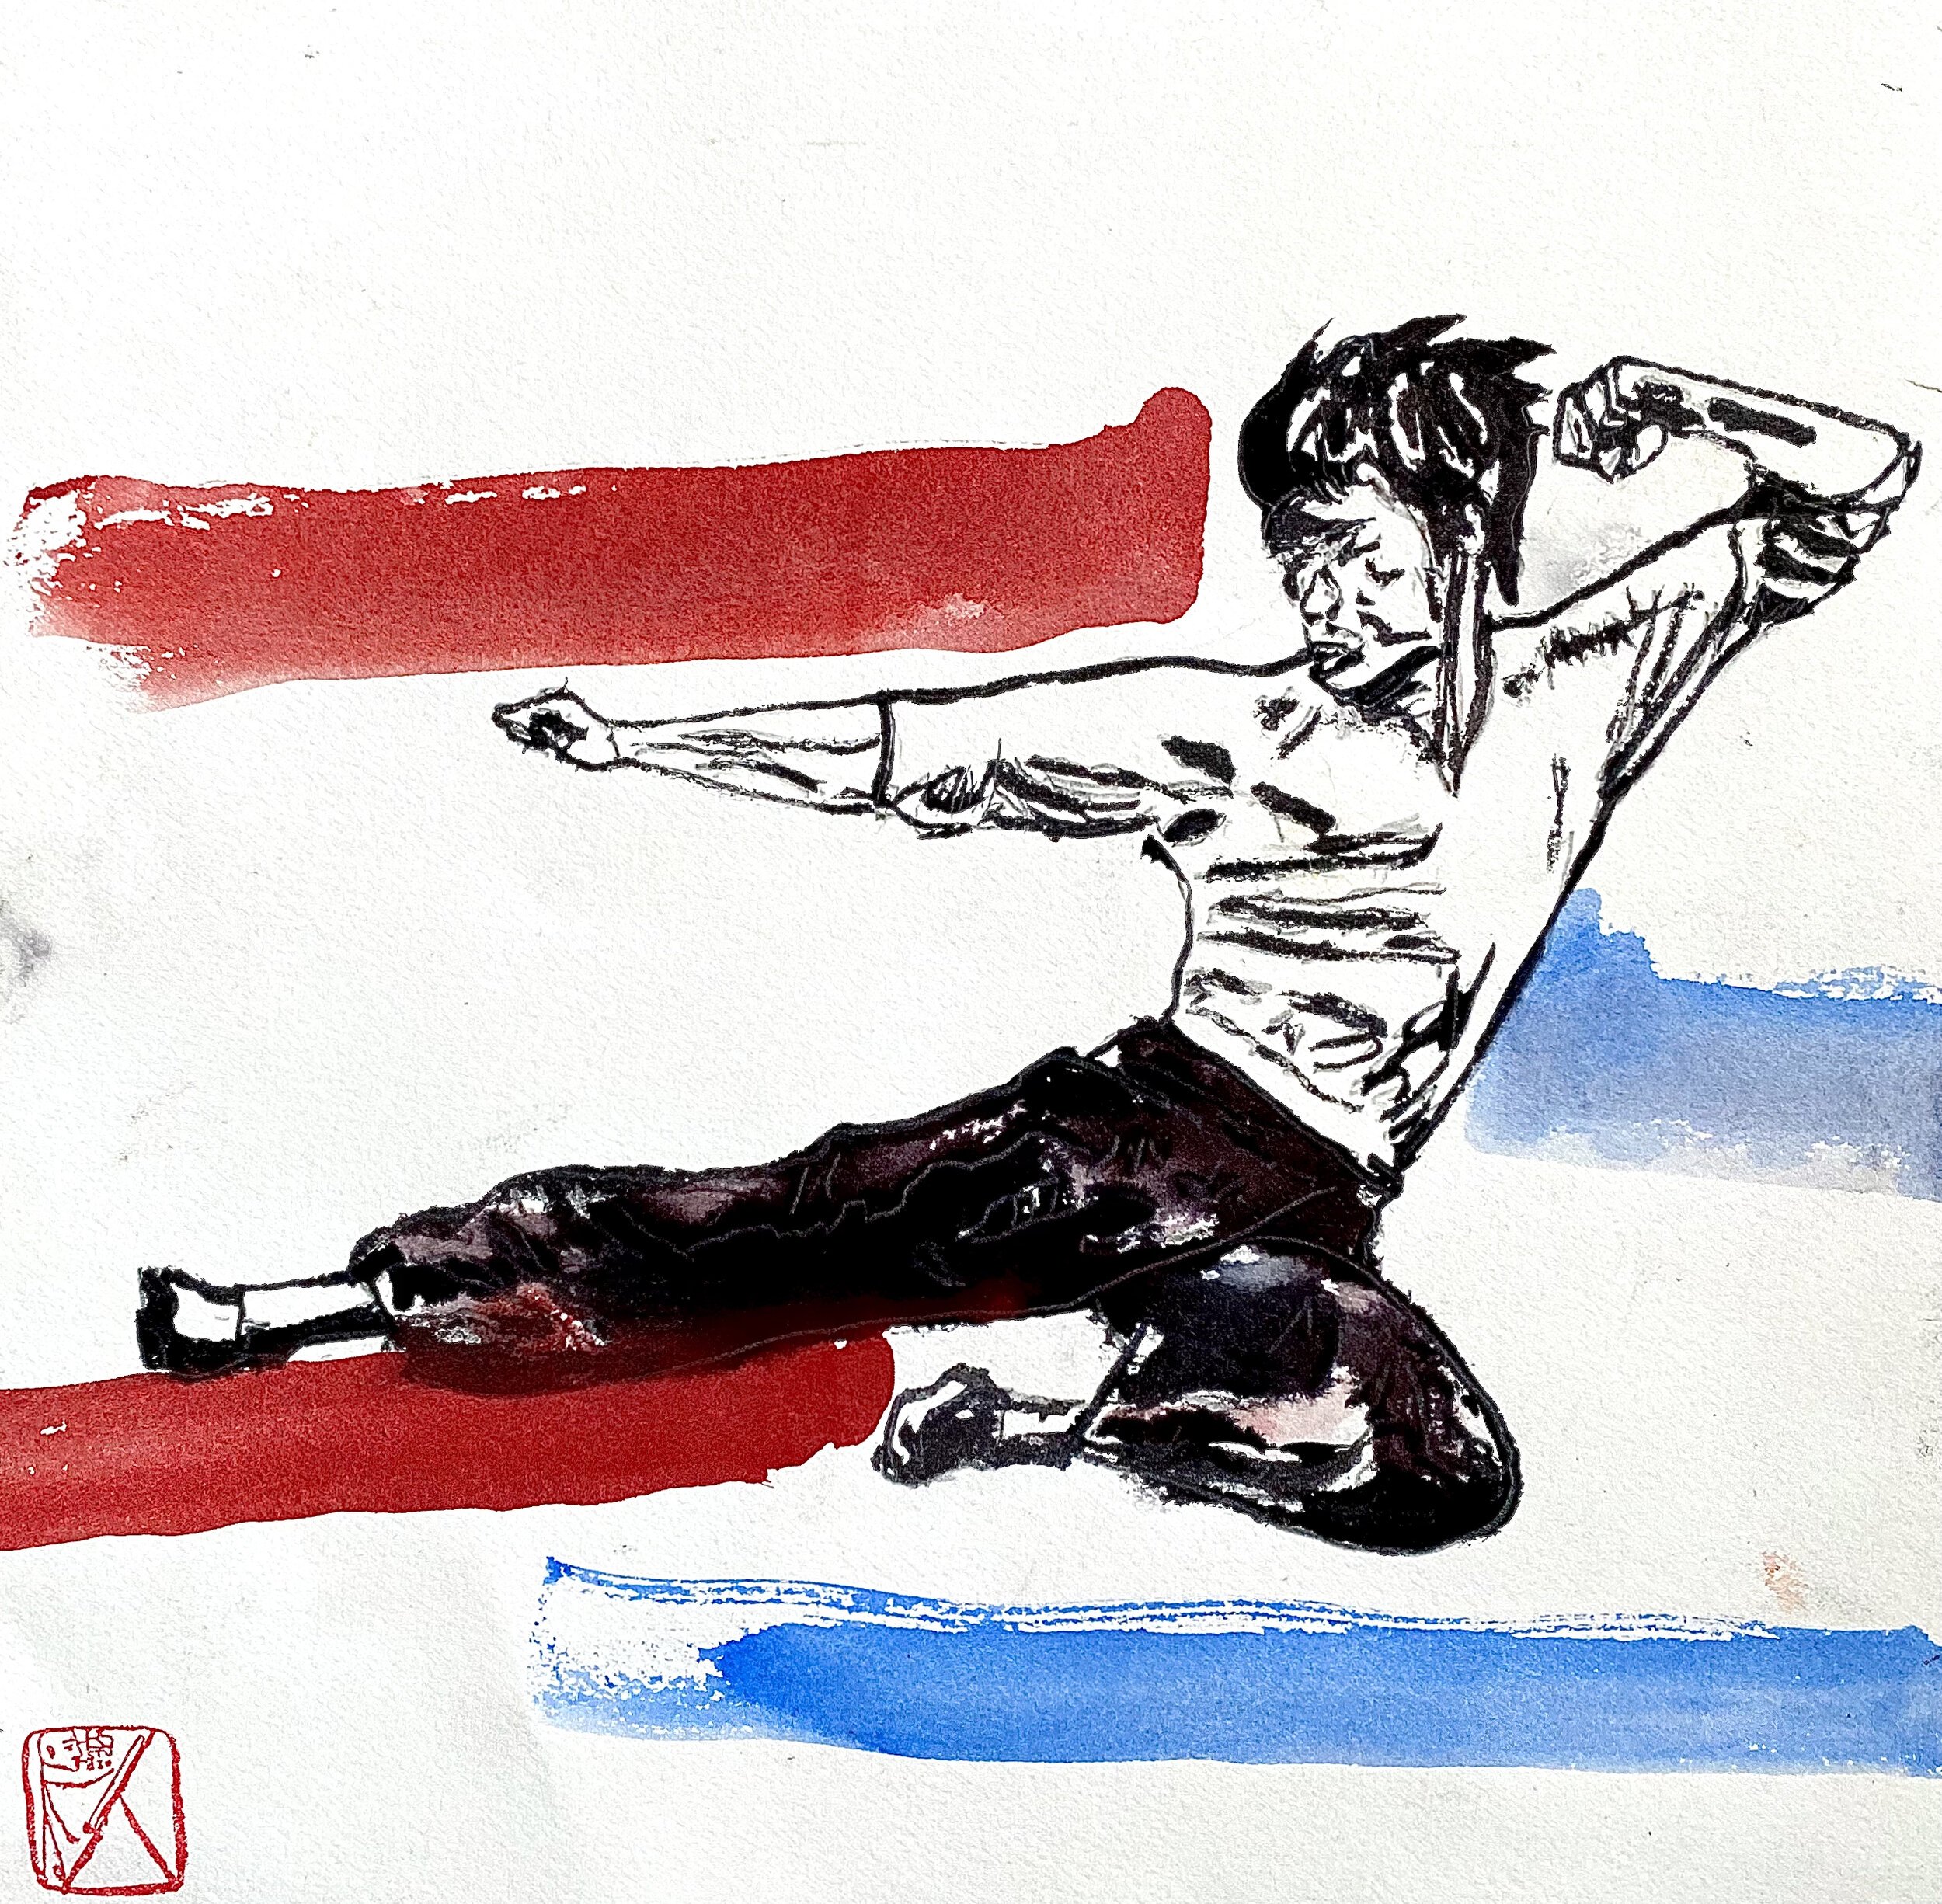 Bruce+Lee+13%22+x+12%22+watercolor+on+paper.jpg